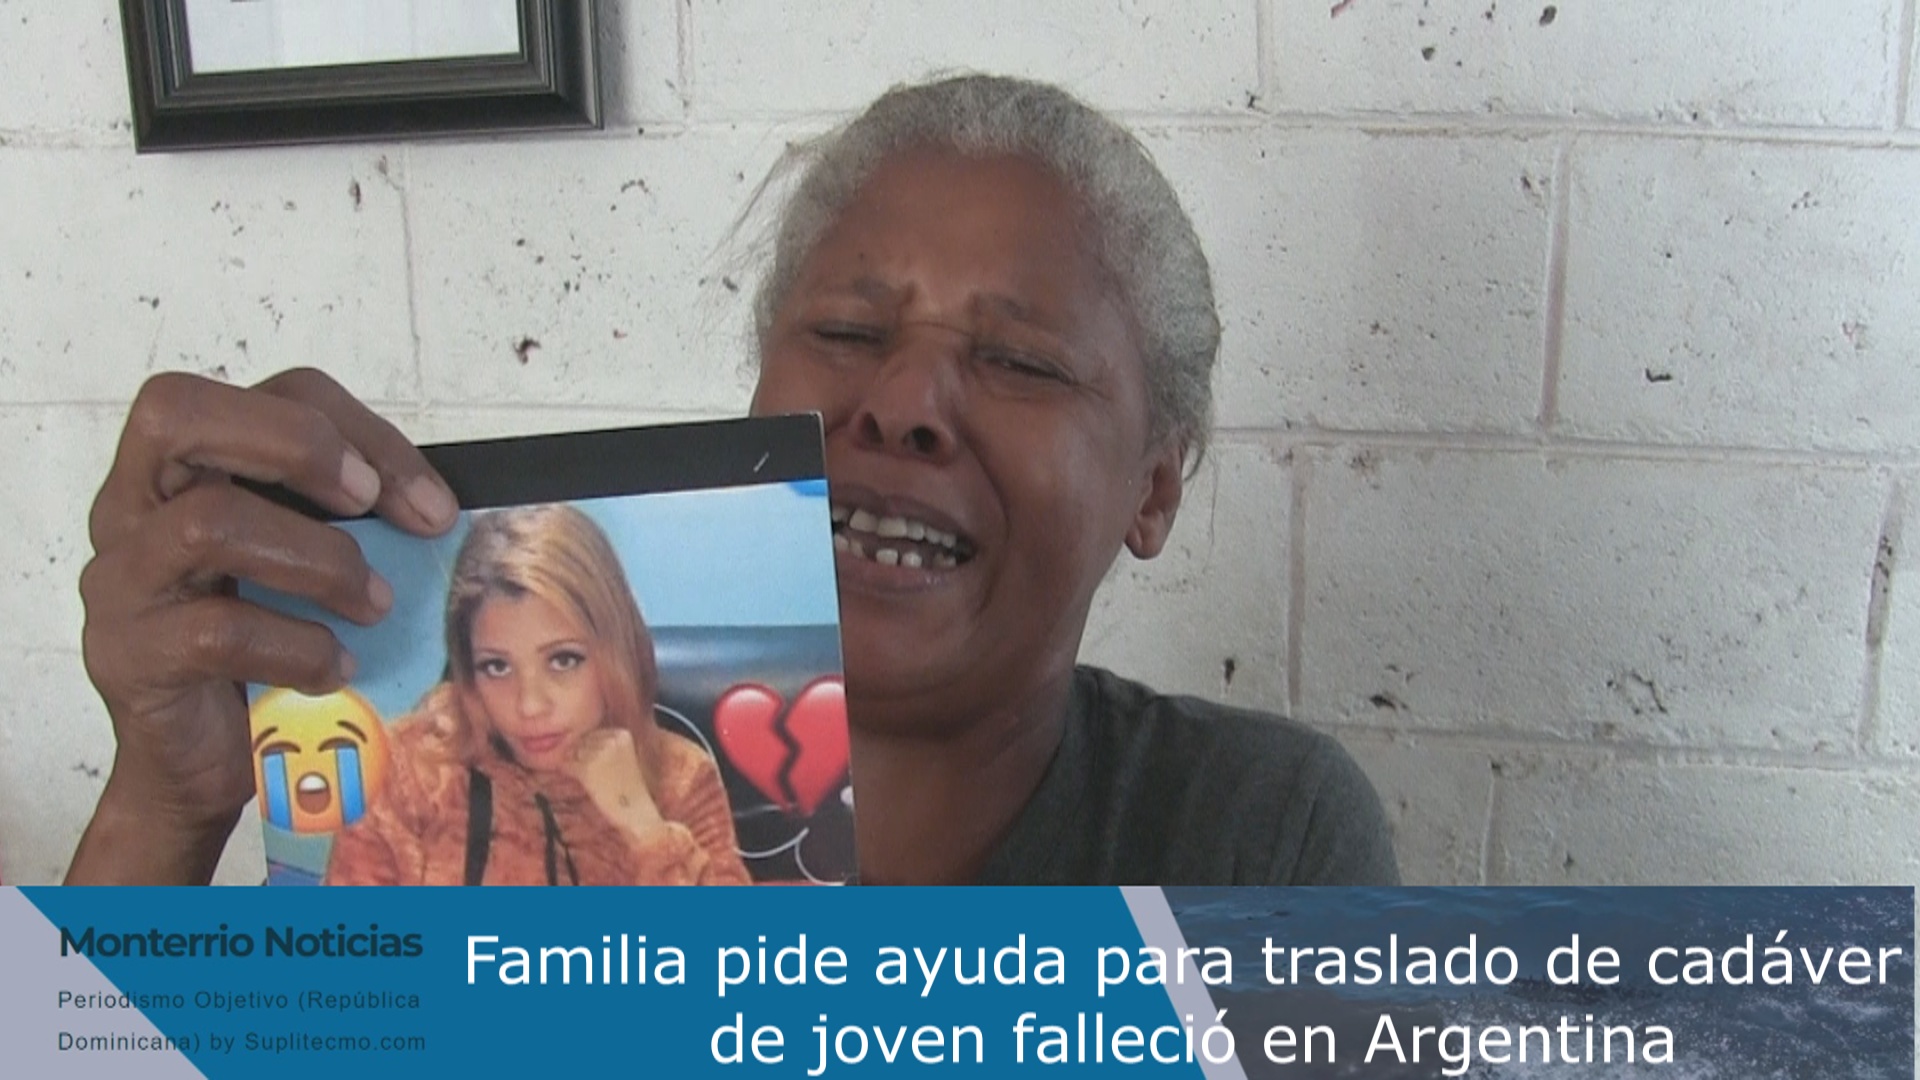 VIDEO: Familia pide ayuda para traslado de cadáver de una joven falleció en Argentina hace más de un año